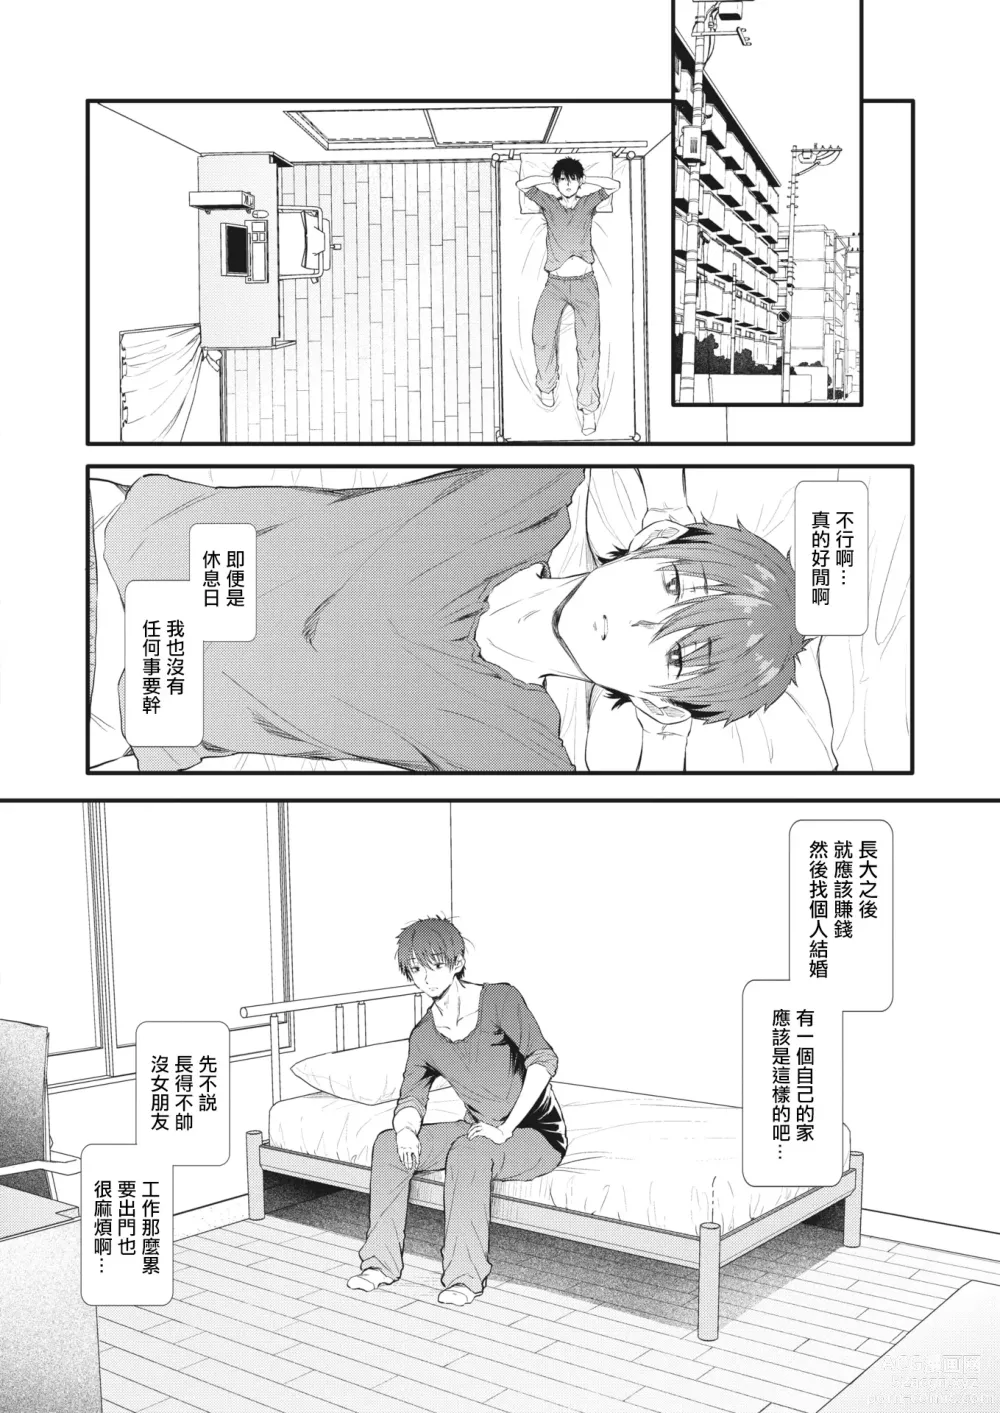 Page 2 of manga Totte Torarete  Shirokuro Gal  Shimai